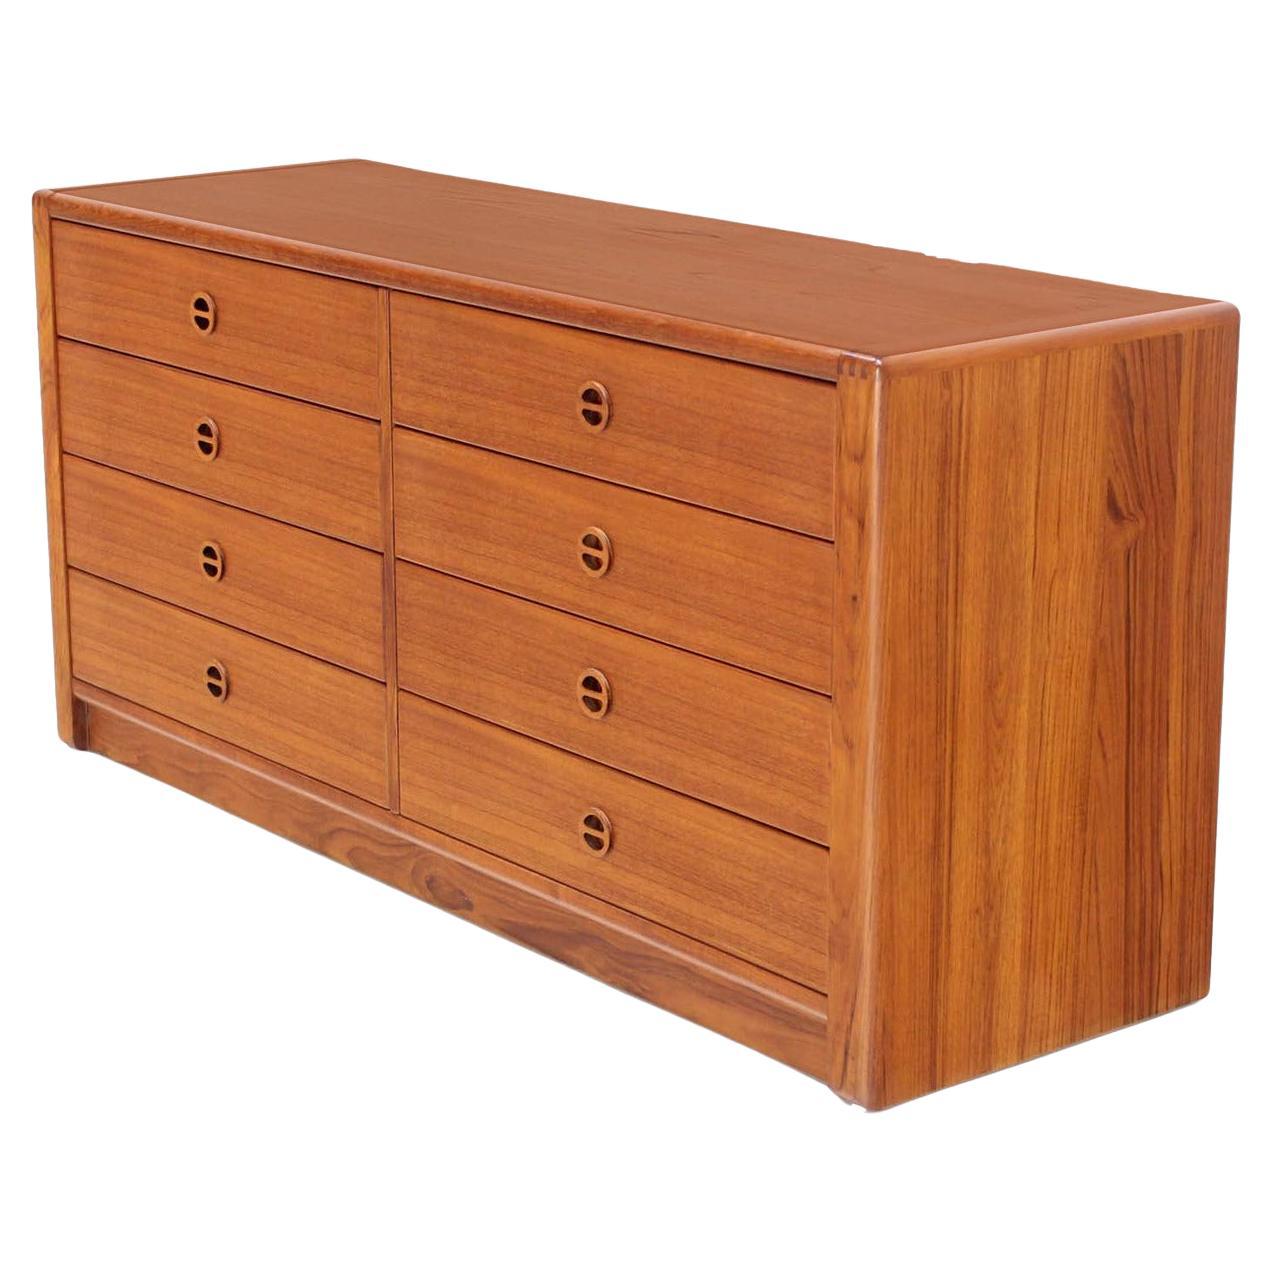 Danish Mid Century Modern Teak Eight Drawer Dresser Credenza Cabinet MINT! For Sale